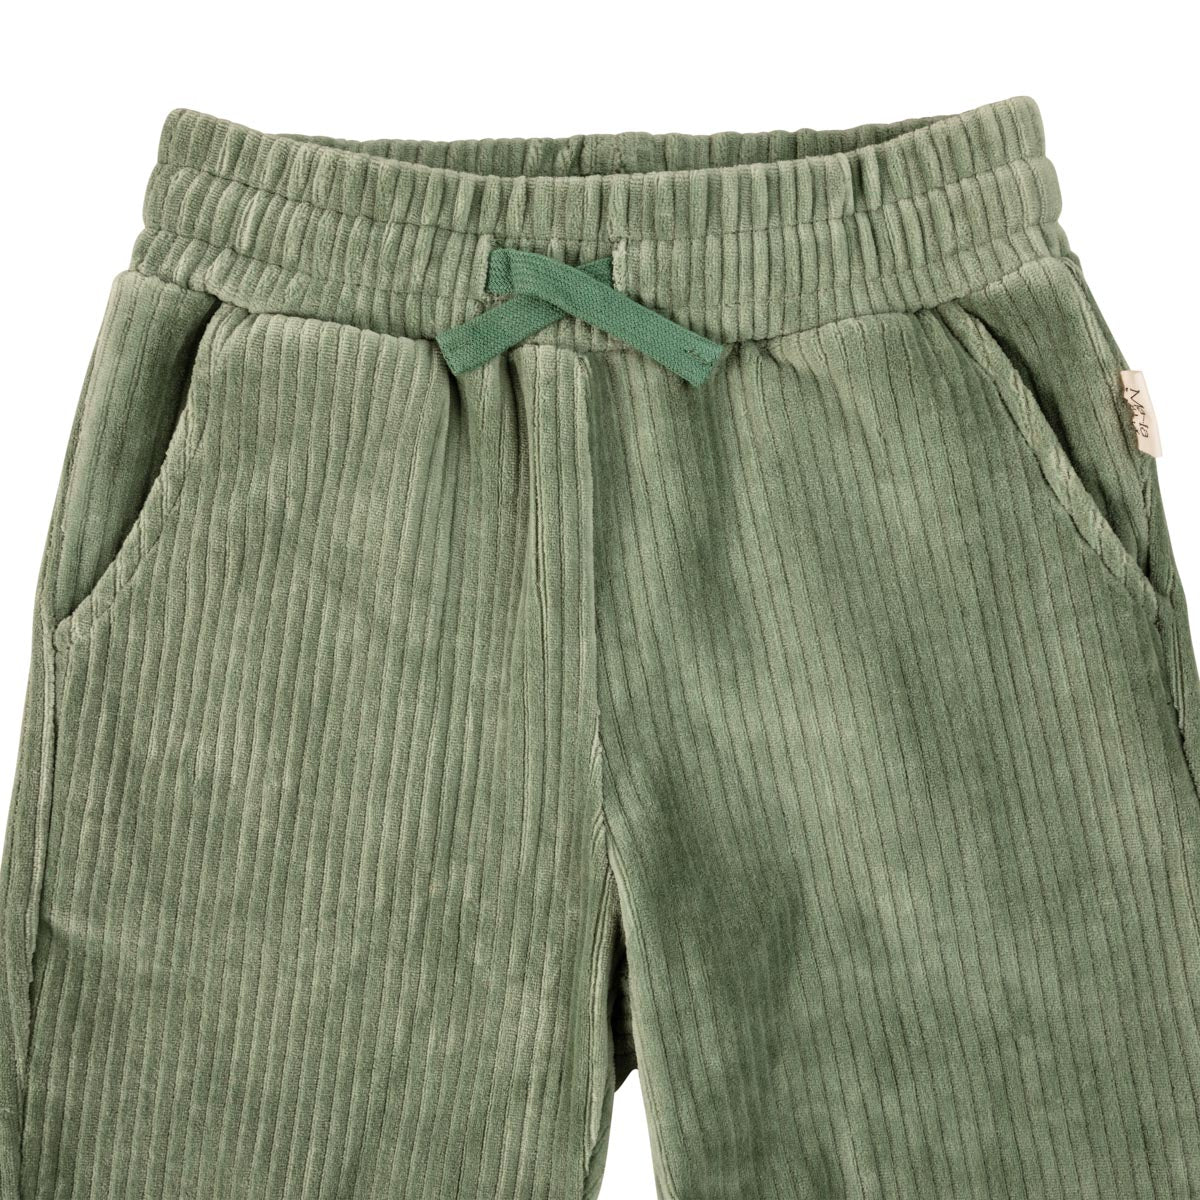 Merri Trousers, green